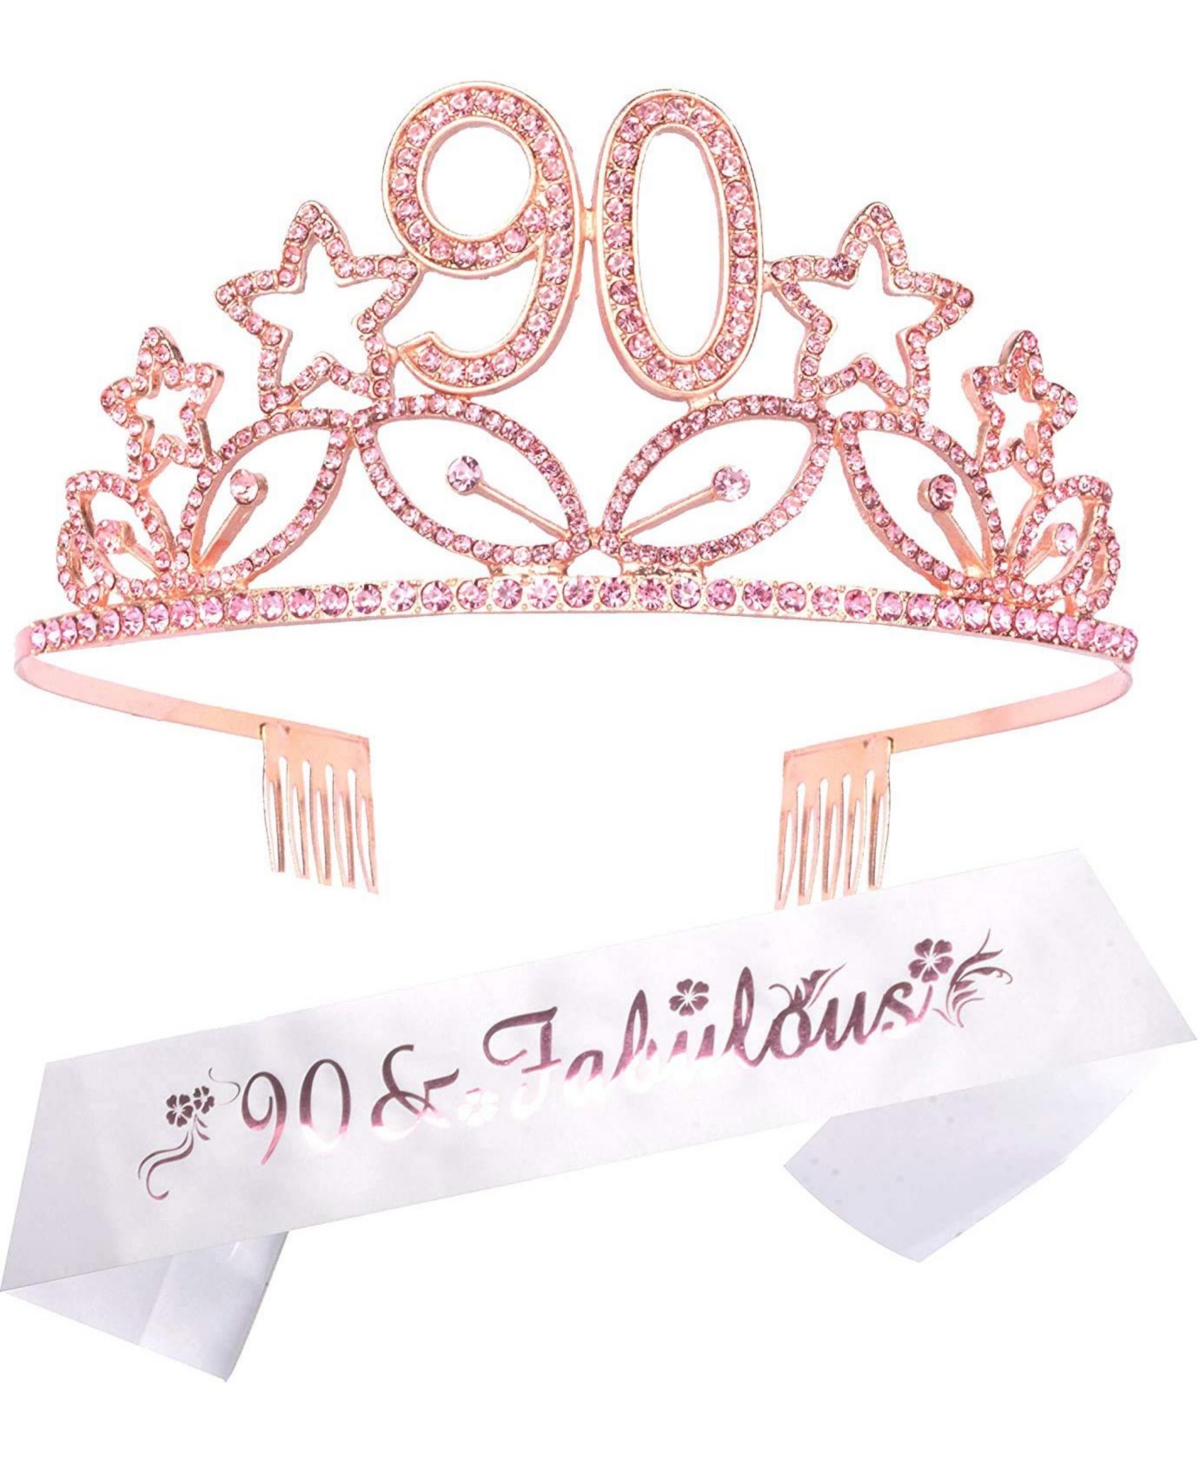 90th Birthday Sash and Tiara for Women - Fabulous Glitter Sash + Stars Rhinestone Pink Premium Metal Tiara for Her, 90th Birthday Gifts for